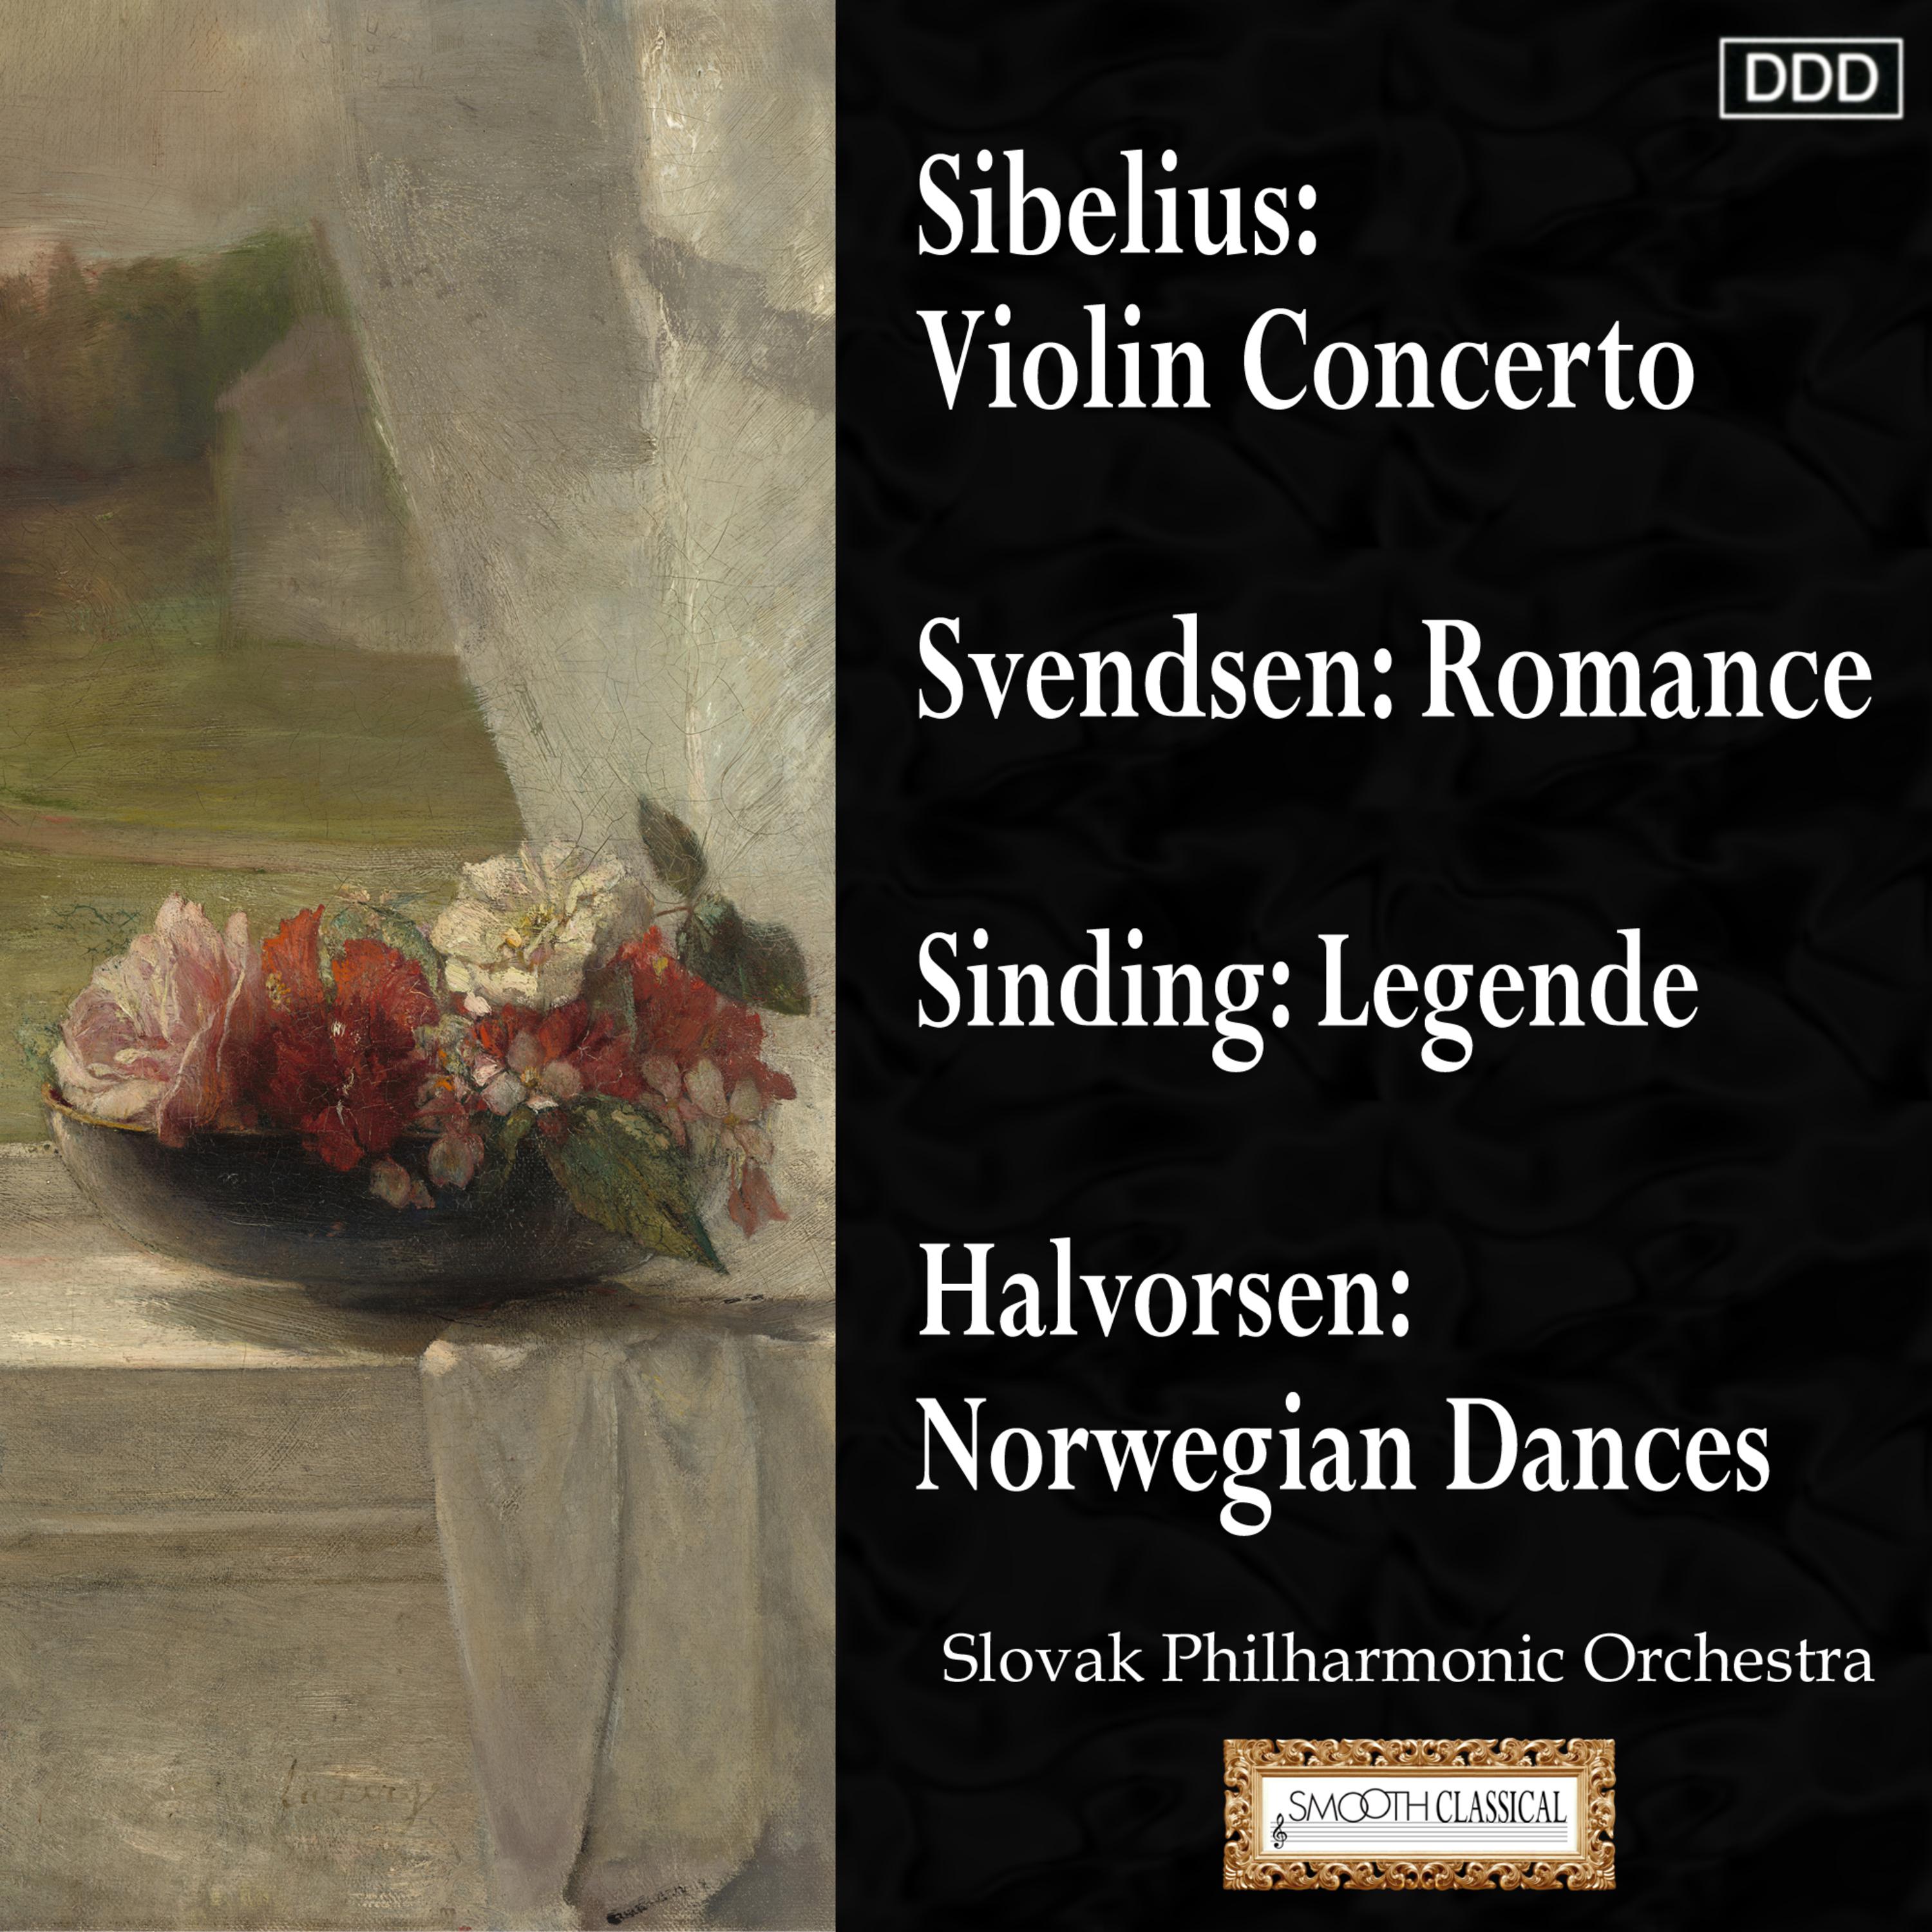 Sibelius: Violin Concerto - Svendsen: Romance - Sinding: Legende - Halvorsen: Norwegian Dances